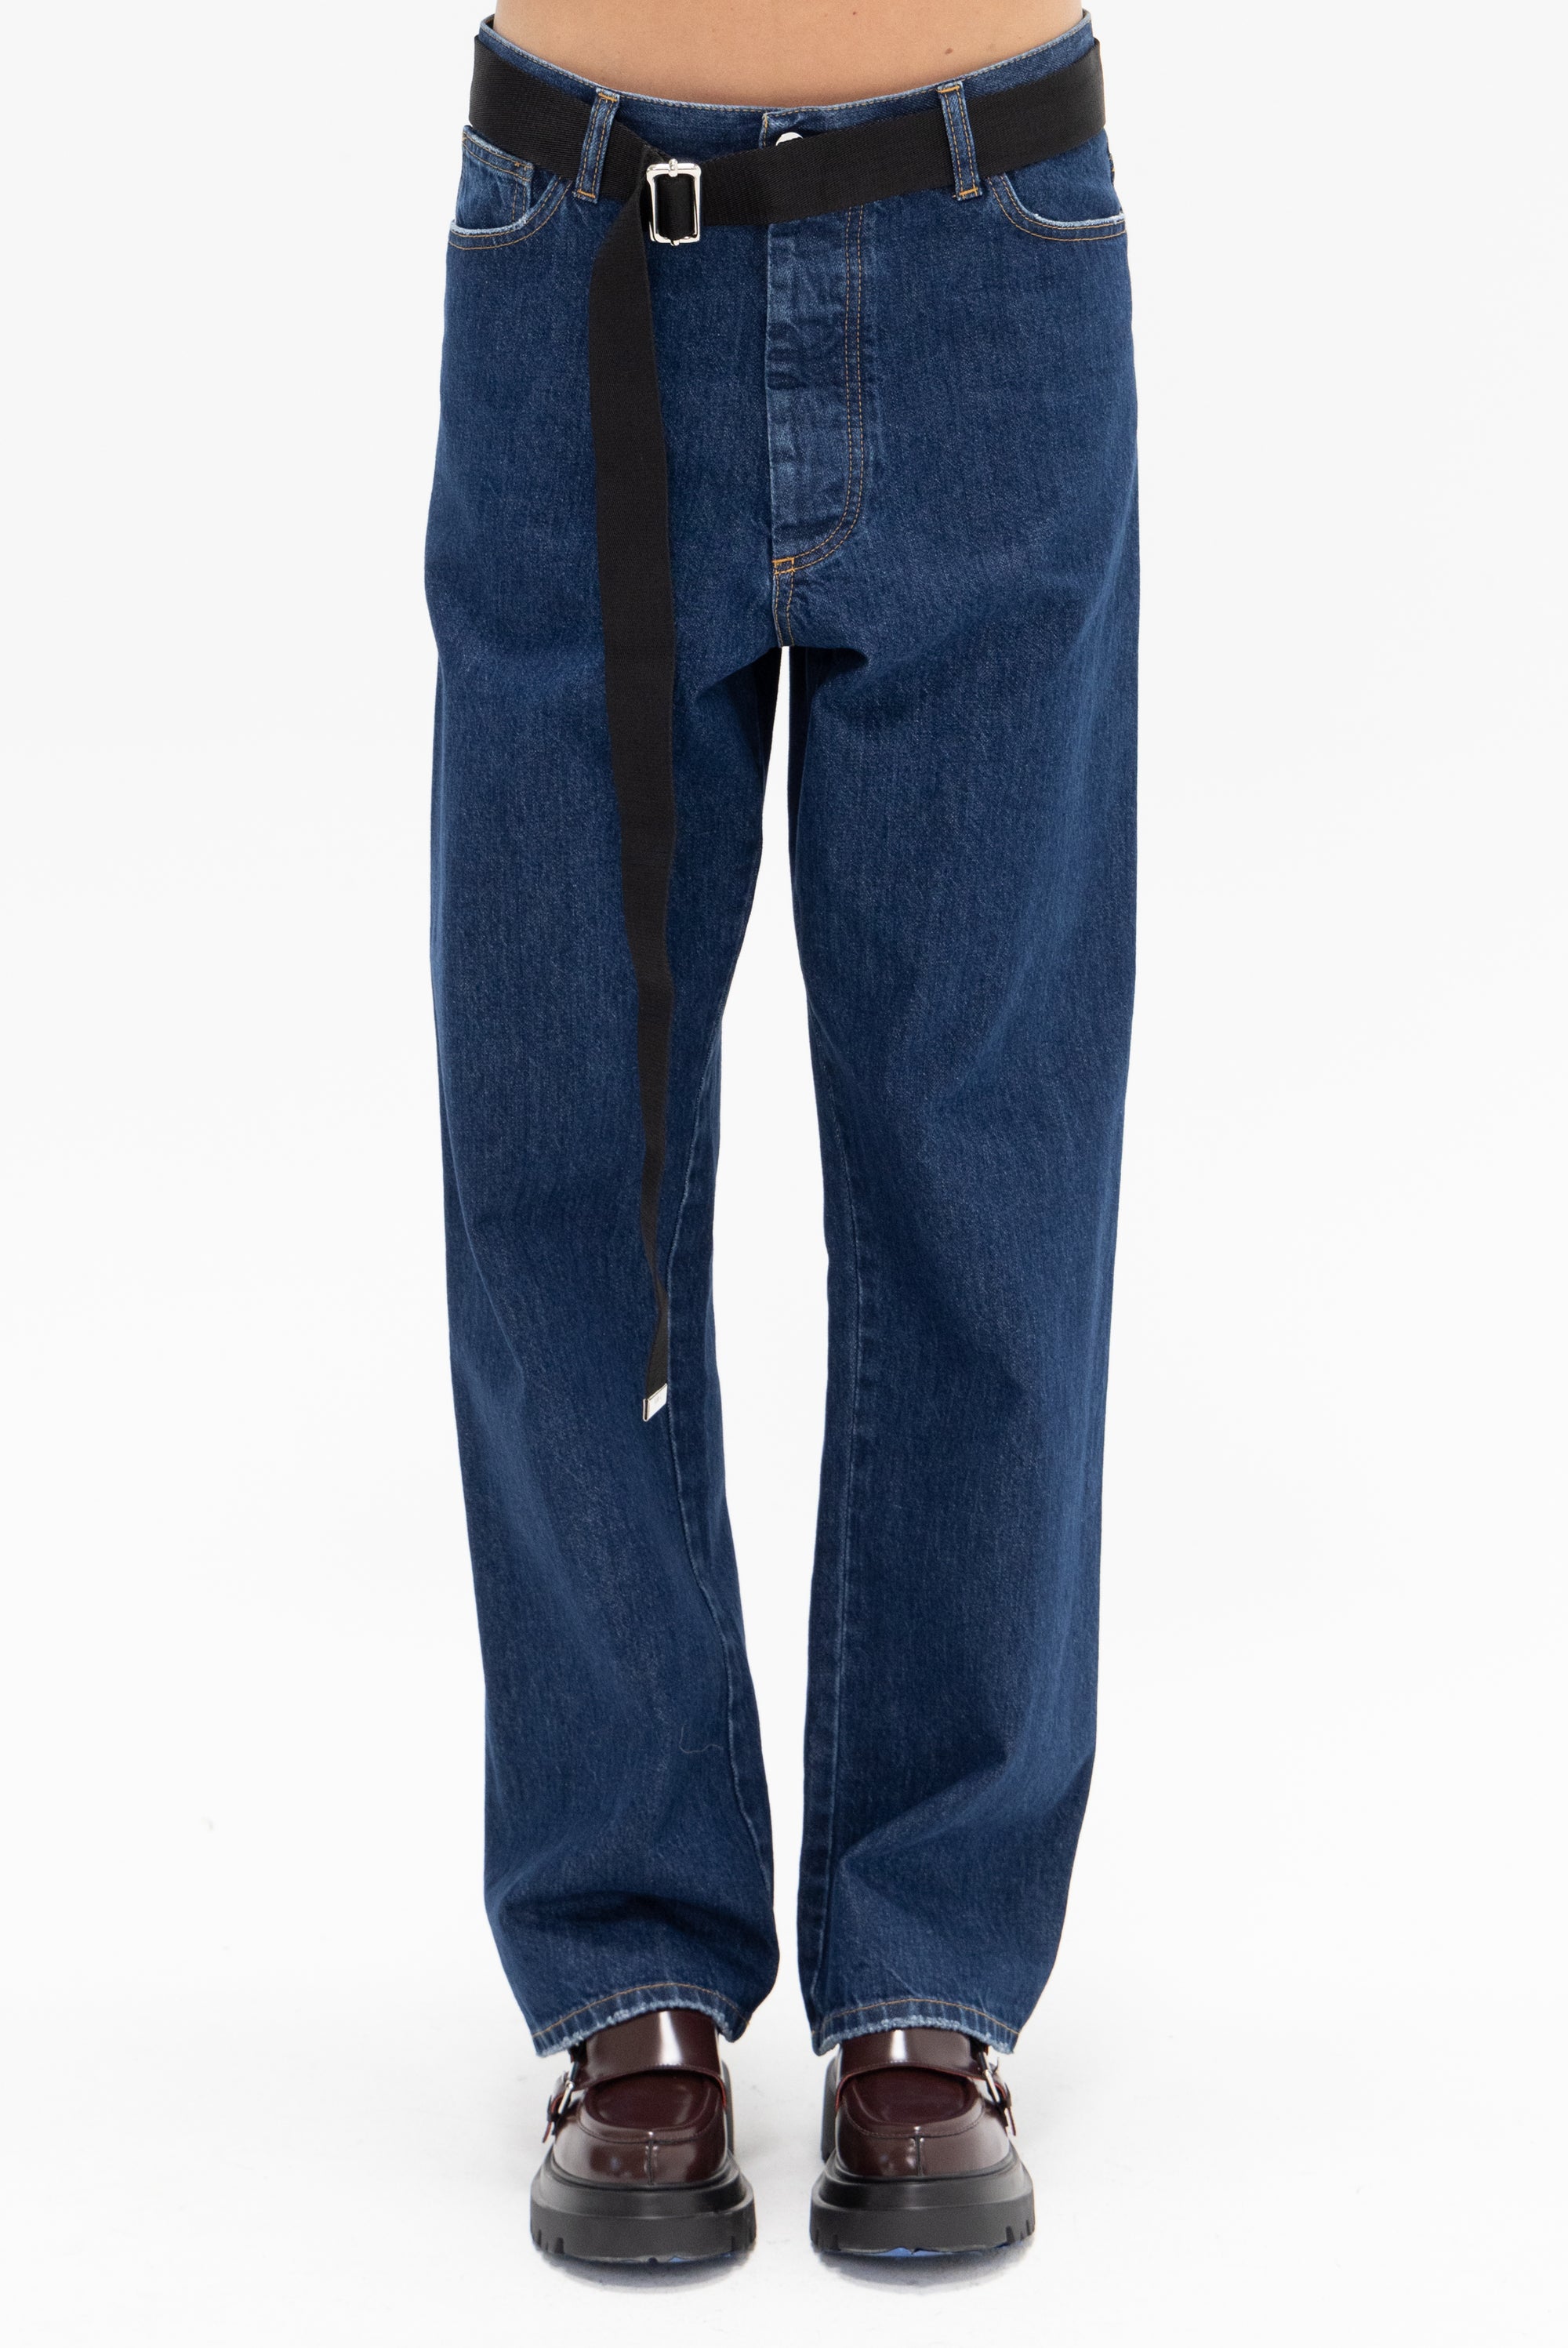 PLAN C - Wide Leg Black Belted Jeans, Denim